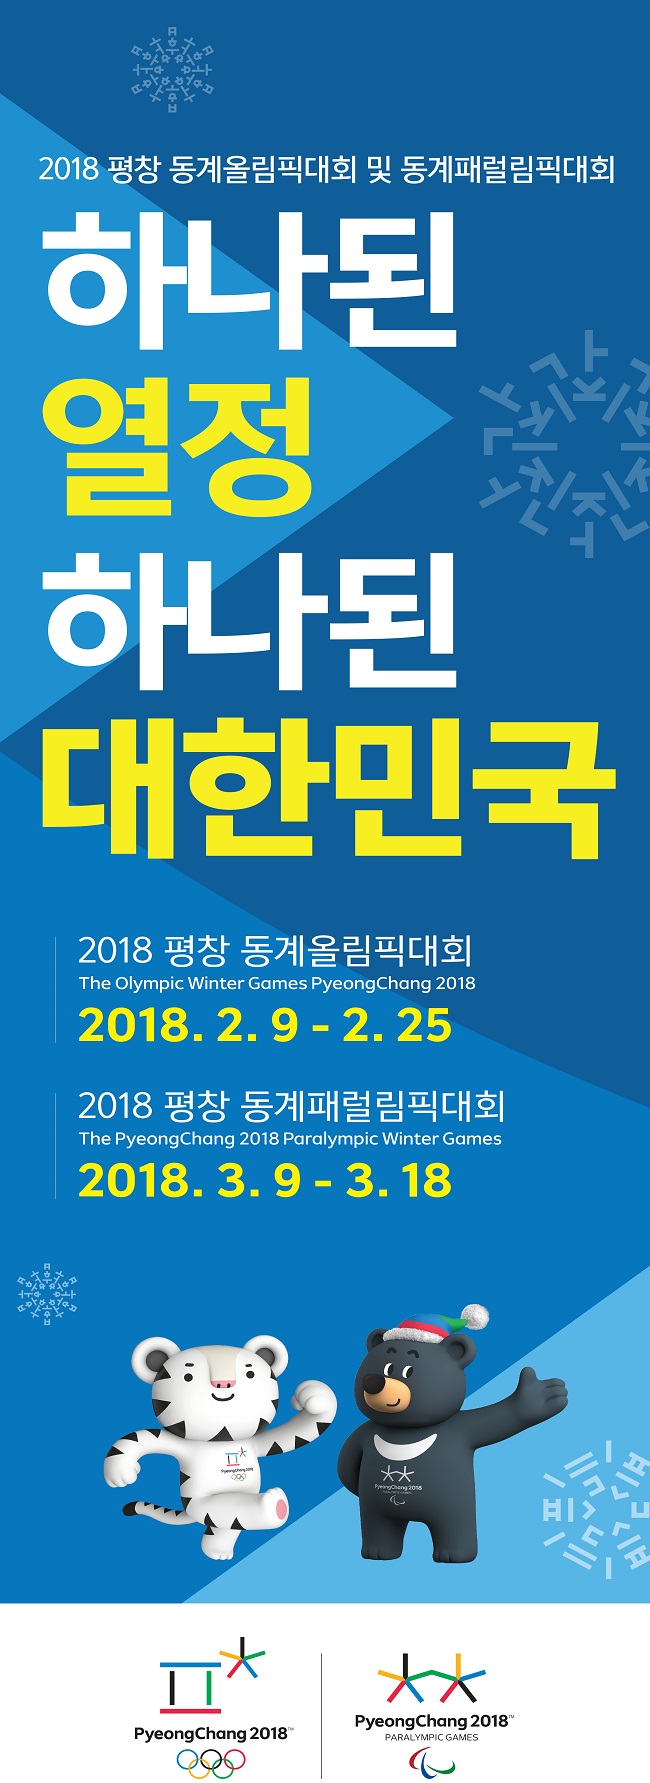 2018 평창 동계올림픽(2.9 - 2.25) 개최, 동계패럴림픽(3.9 - 3.18) 개최